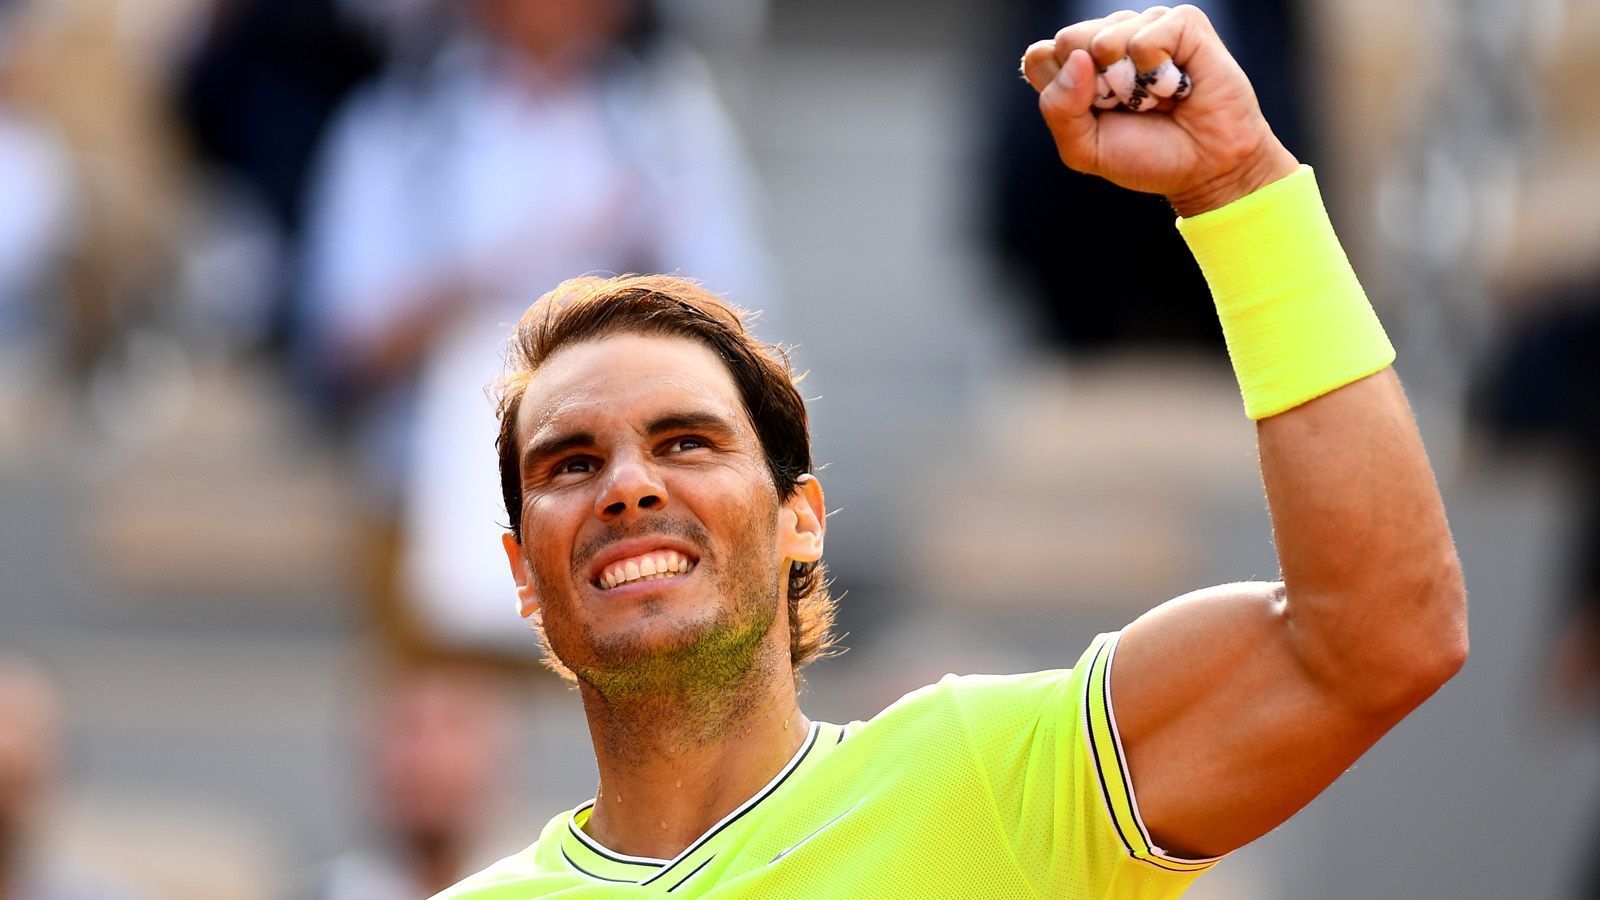 
                <strong>Federer vs. Nadal - eine Rivalität für die Ewigkeit</strong><br>
                Denn: "Sandplatz-König" Nadal ist auf seinem Lieblingsbelag favorisiert. Bereits zwölfmal konnte der Spanier das Grand-Slam-Turnier auf Sand für sich entscheiden. In den vergangenen zehn Jahren holte Nadal siebenmal den Titel in Paris. Zwischen 2010 und 2014 waren es fünf Siege in Folge. Damit toppte Nadal das Kunststück, das ihm zwischen 2005 und 2008 gelang, als er vier Jahre in Folge die French Open gewann. Die Sand-Bilanz der beiden gegeneinander: 13:2 für Nadal.
              